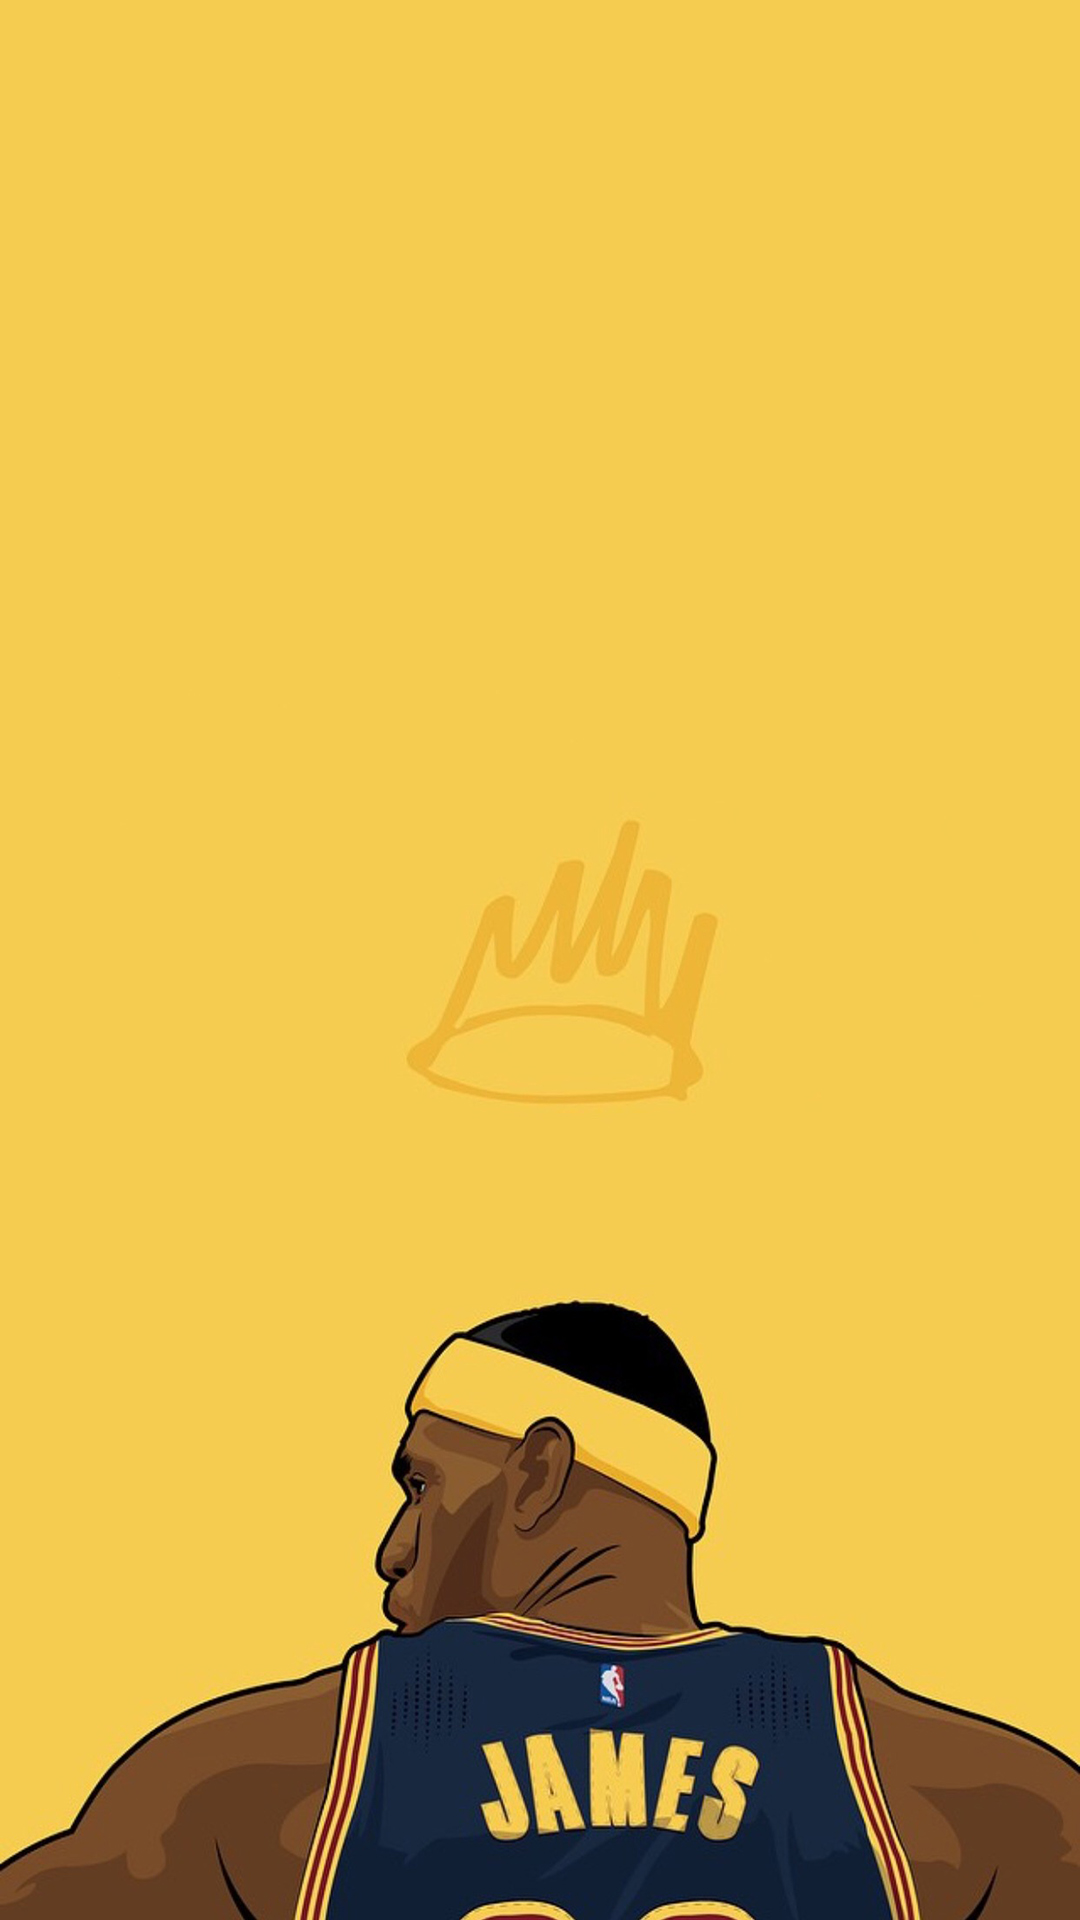 詹姆斯手绘背影黄色篮球运动员体育苹果手机高清壁纸,手机壁纸图片2020最新款